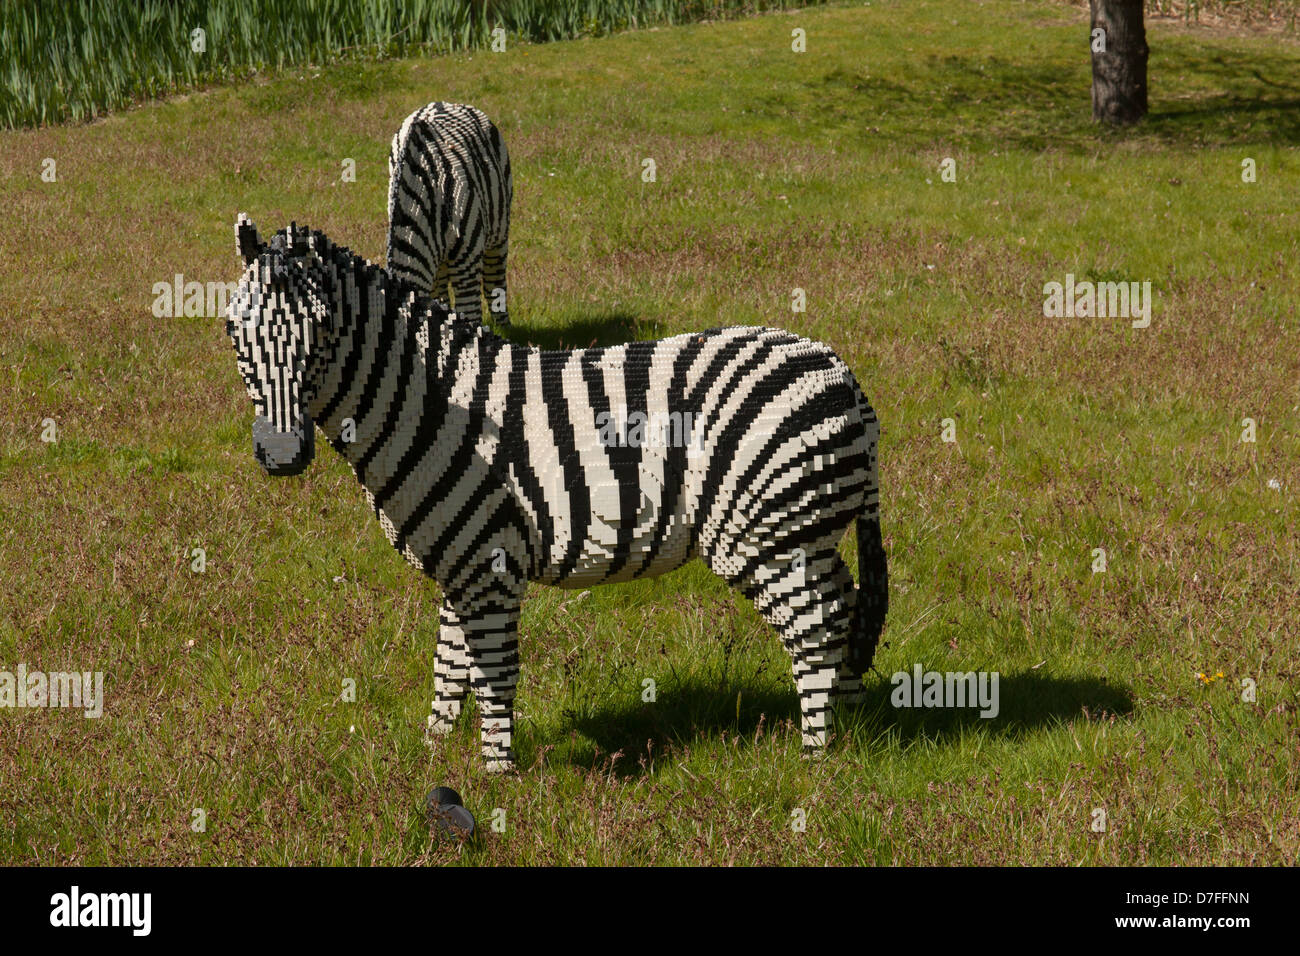 Lego model of a Zebra at Legoland, Windsor, London, England, United Kingdom Stock Photo -